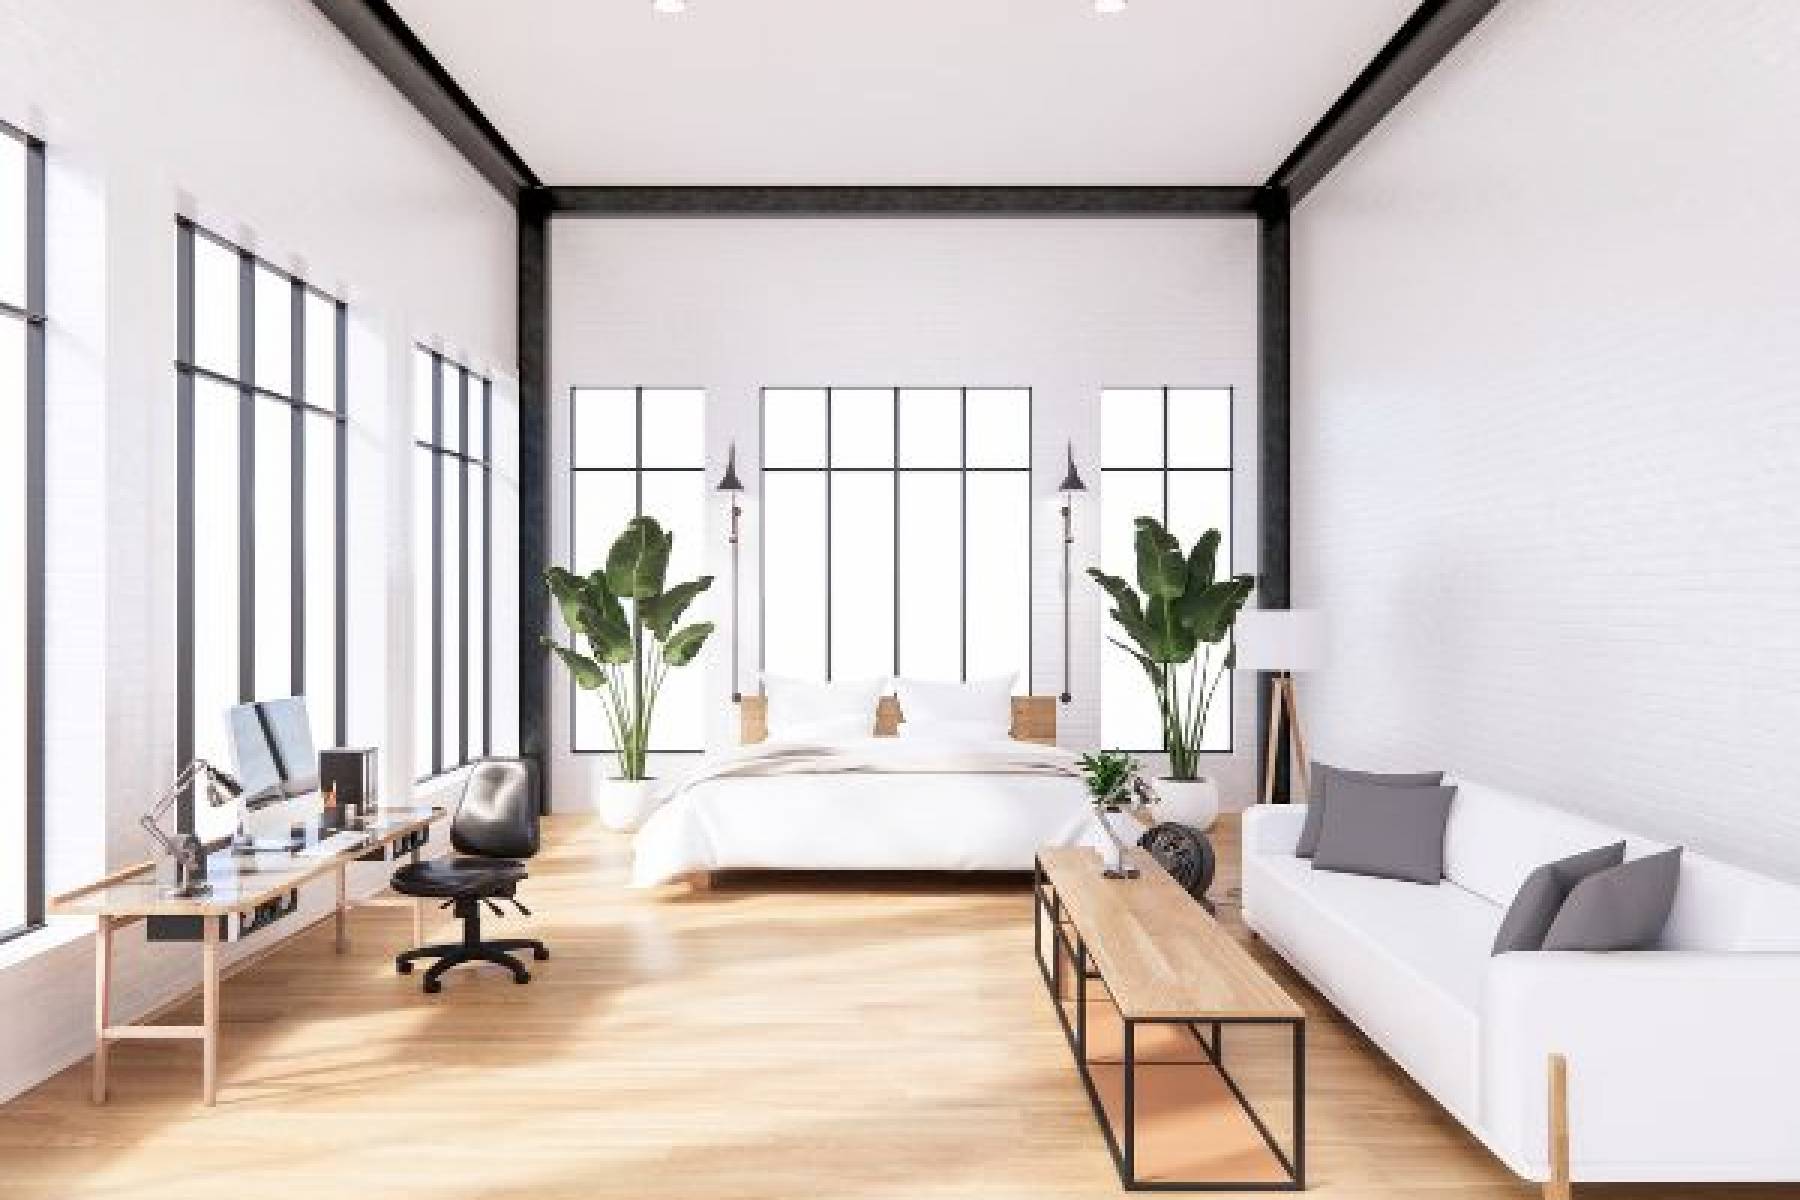 Jak zaprojektować stylową i wygodną przestrzeń w mieszkaniu z ograniczoną przestrzenią